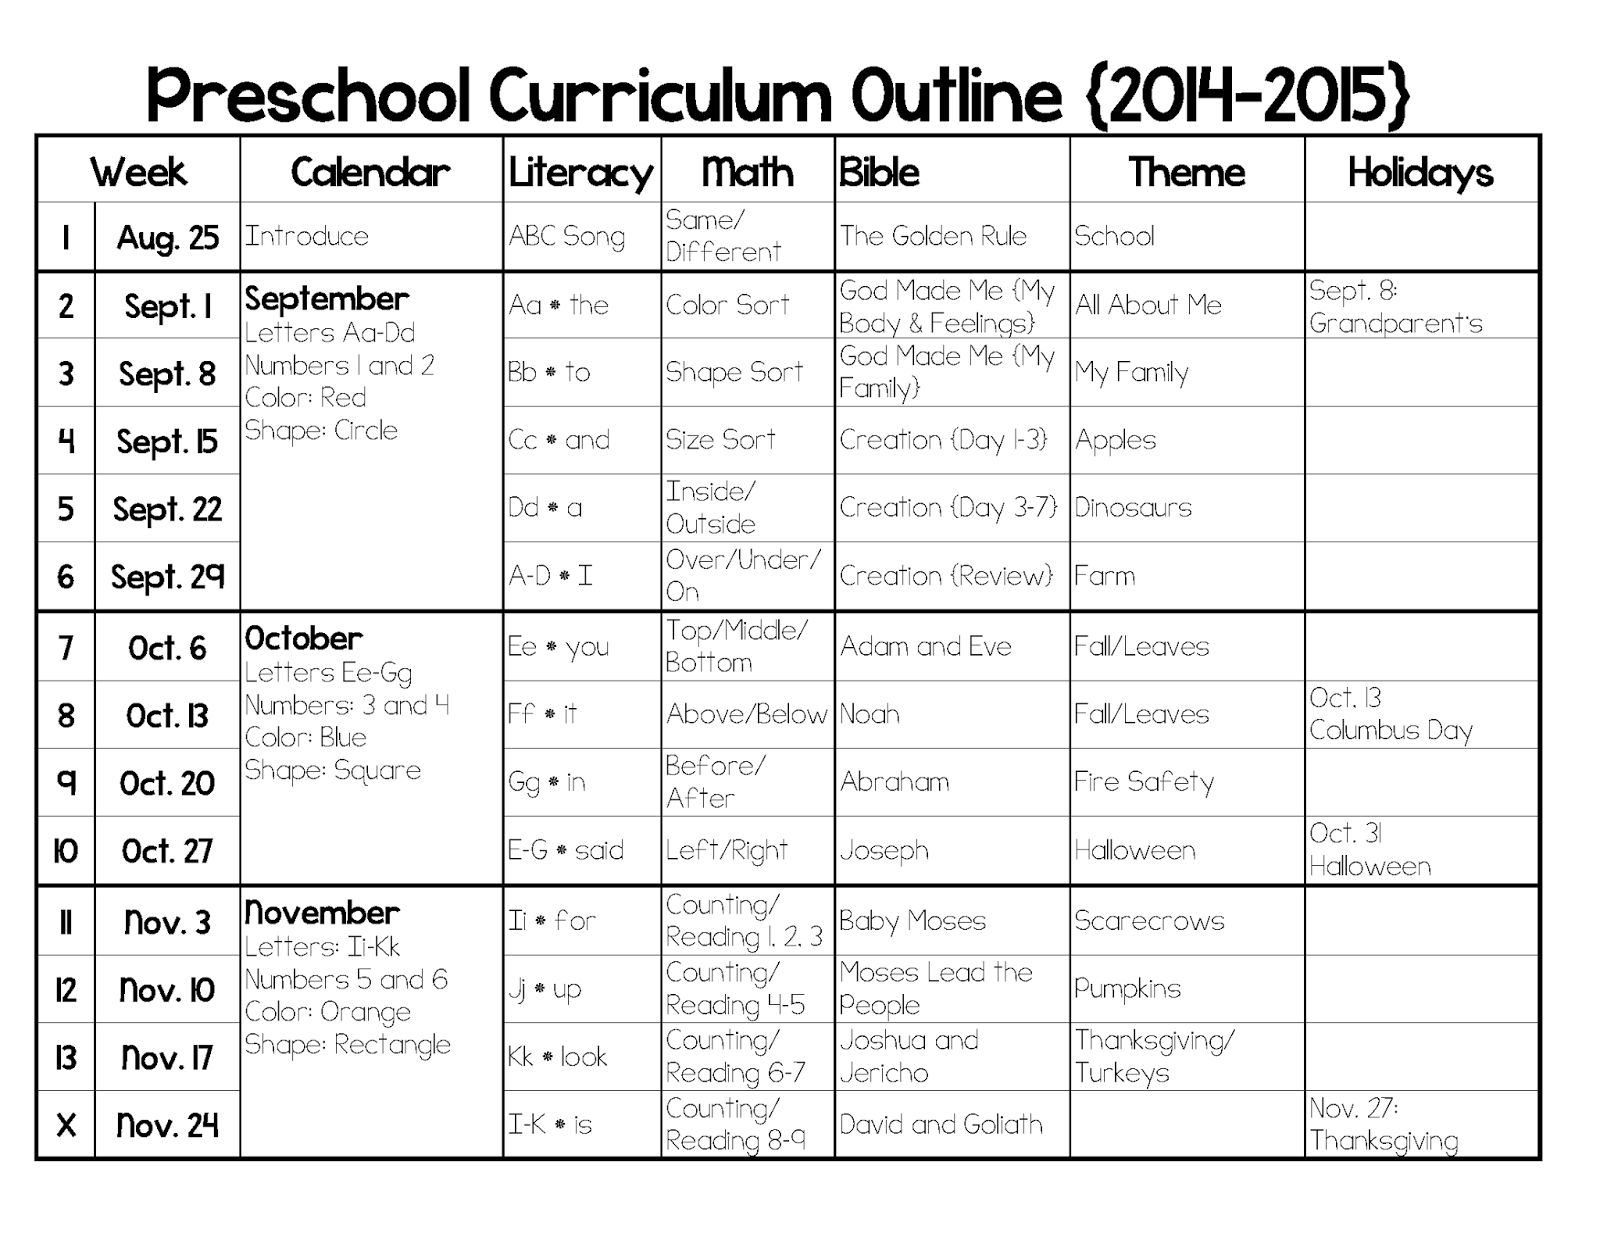 Preschool+Curriculum+Outline+%7B2014 2015%7D Page 1 - Pre Kindergarten Programs